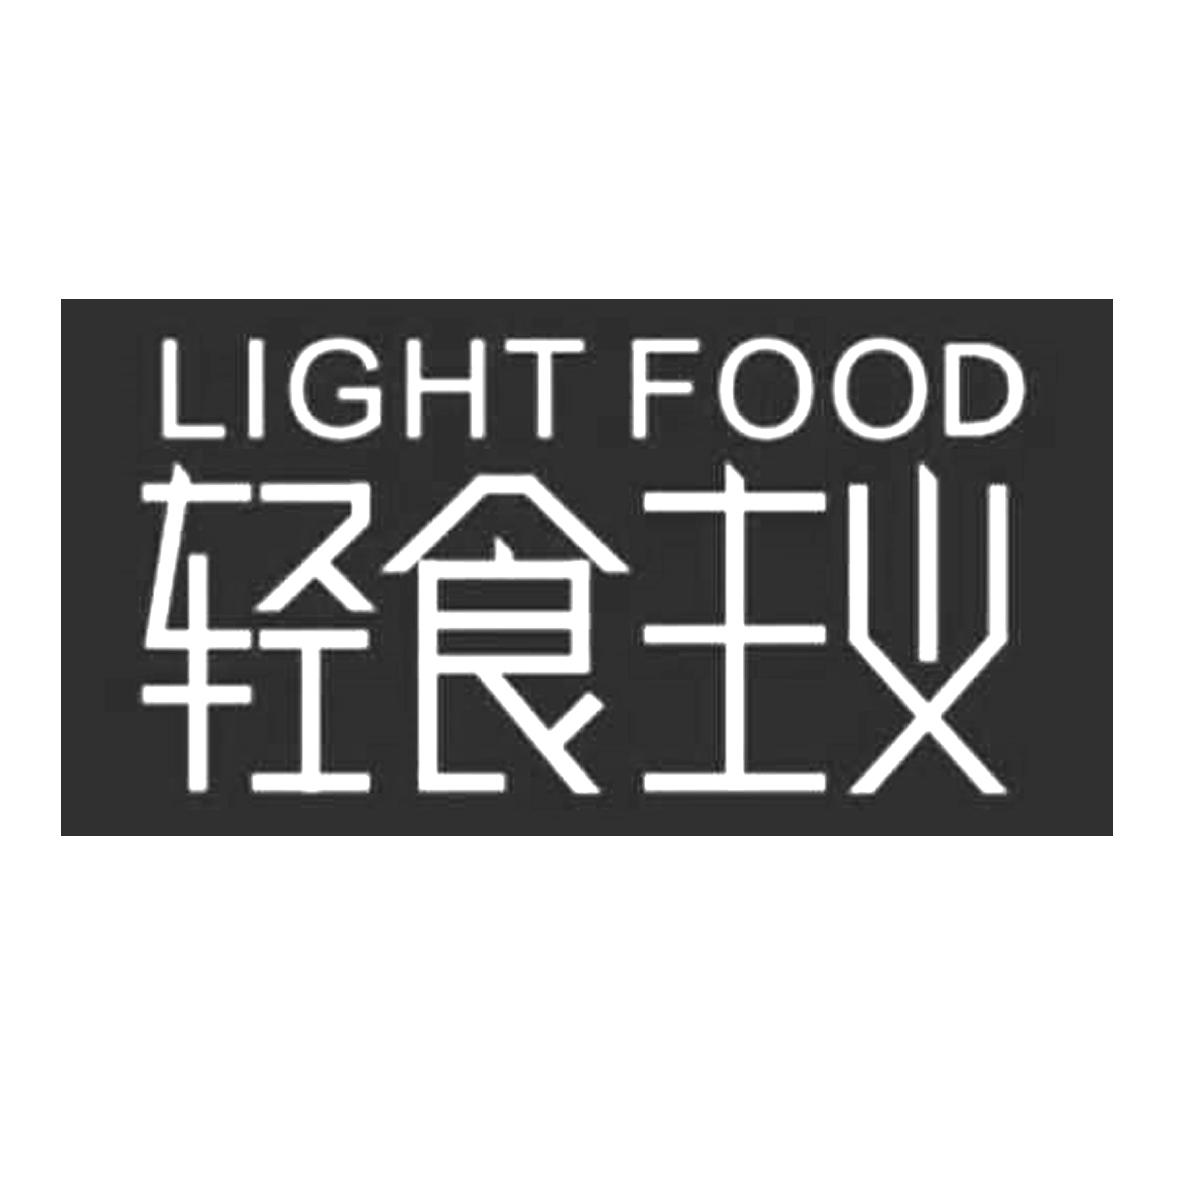 轻食主义logo图片图片